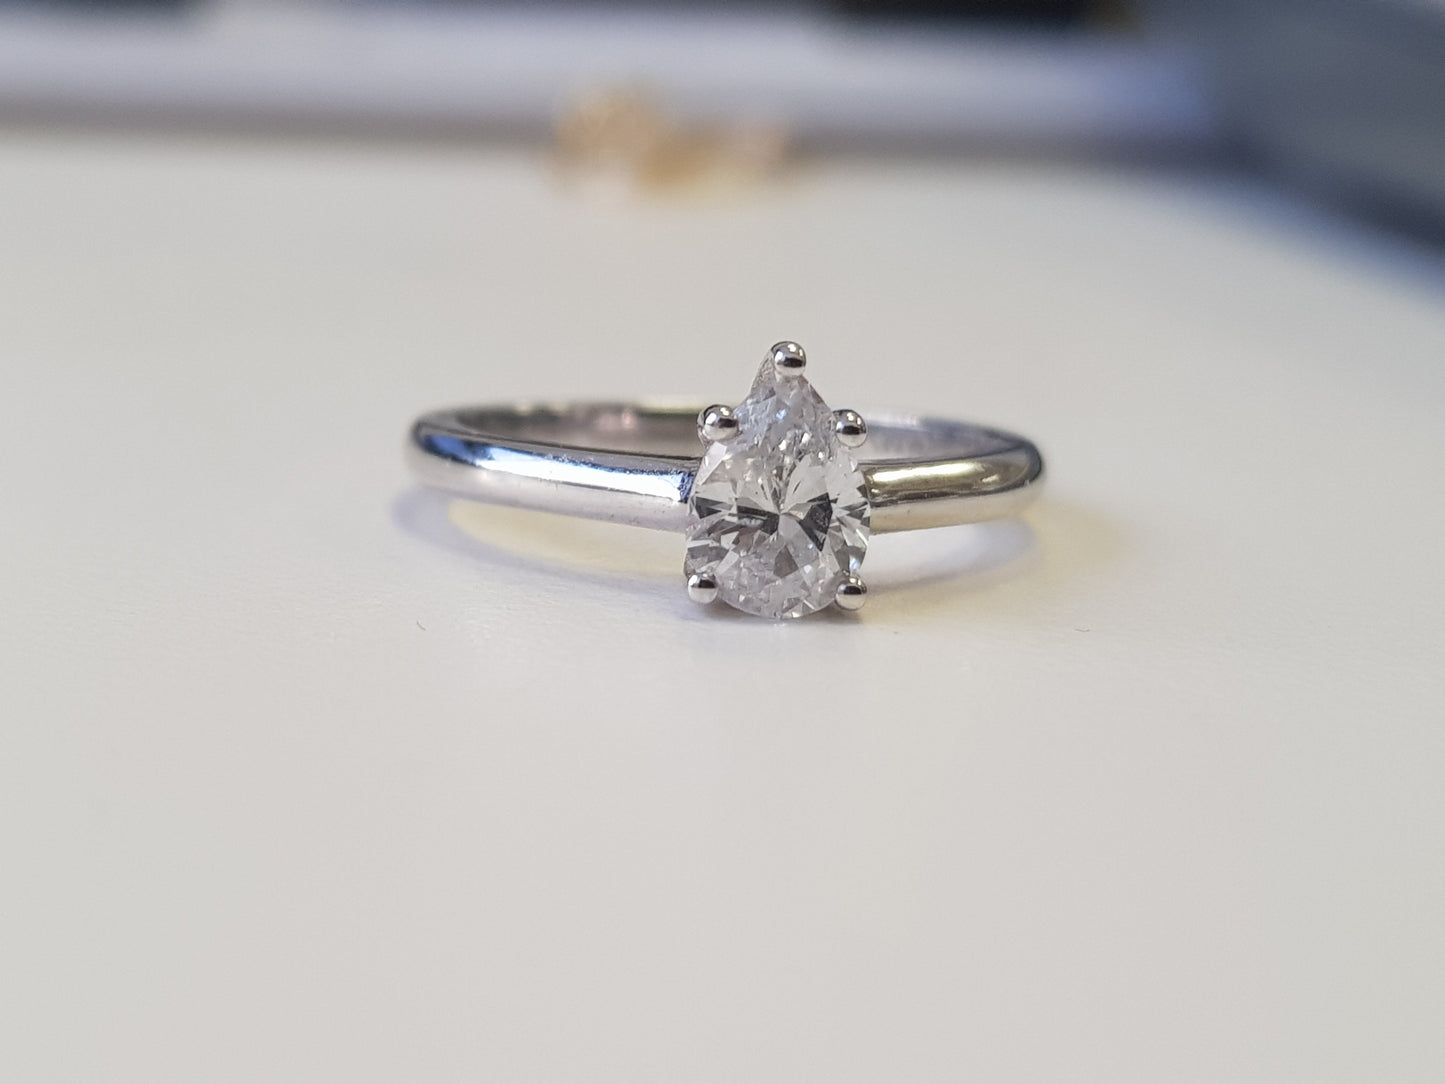 טבעת סוליטר יהלום בצורת טיפה, טבעת אירוסין אגס 0.71 קראט